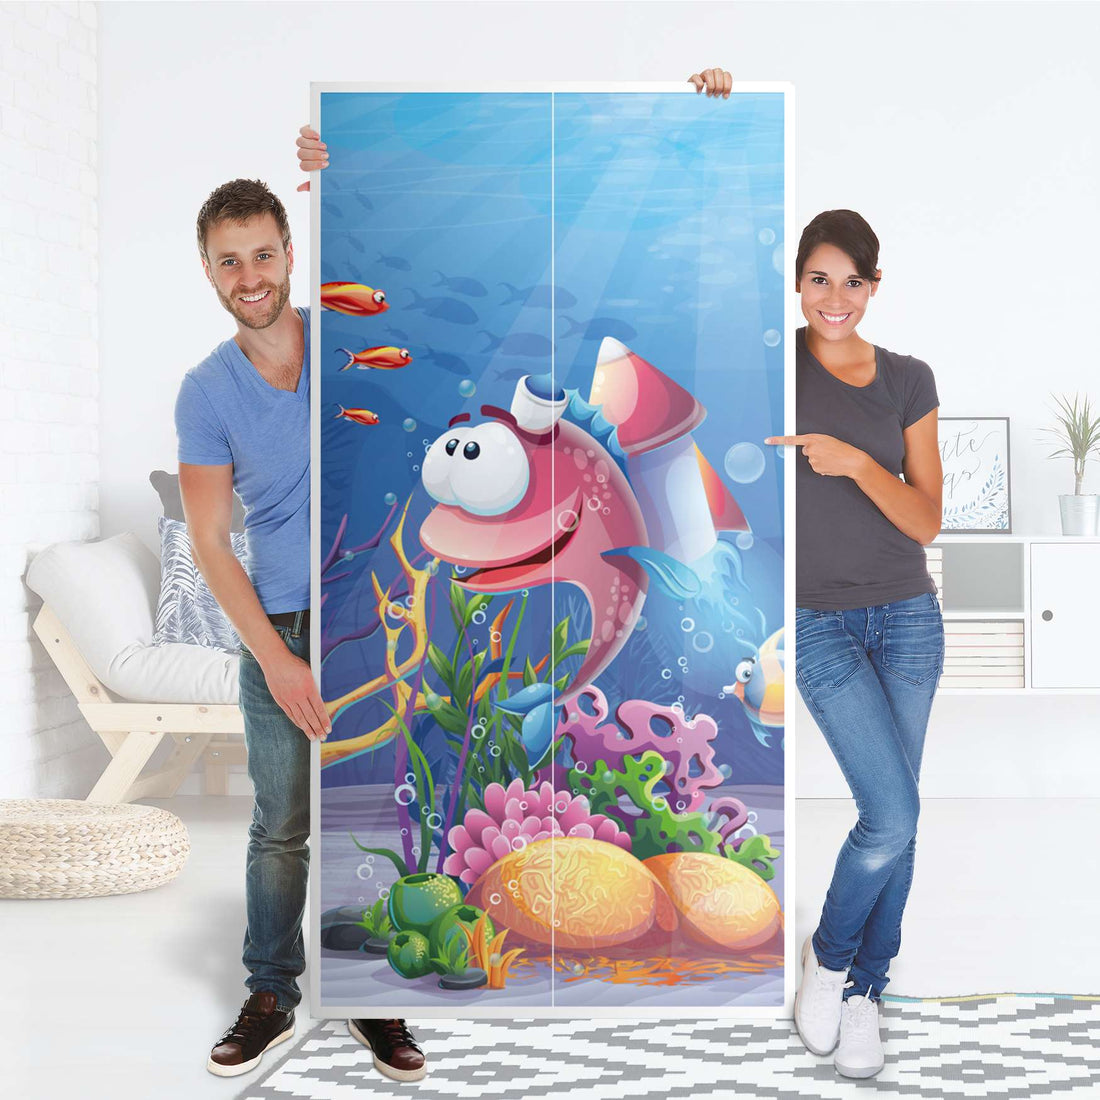 Klebefolie für Möbel Bubbles - IKEA Pax Schrank 201 cm Höhe - 2 Türen - Folie